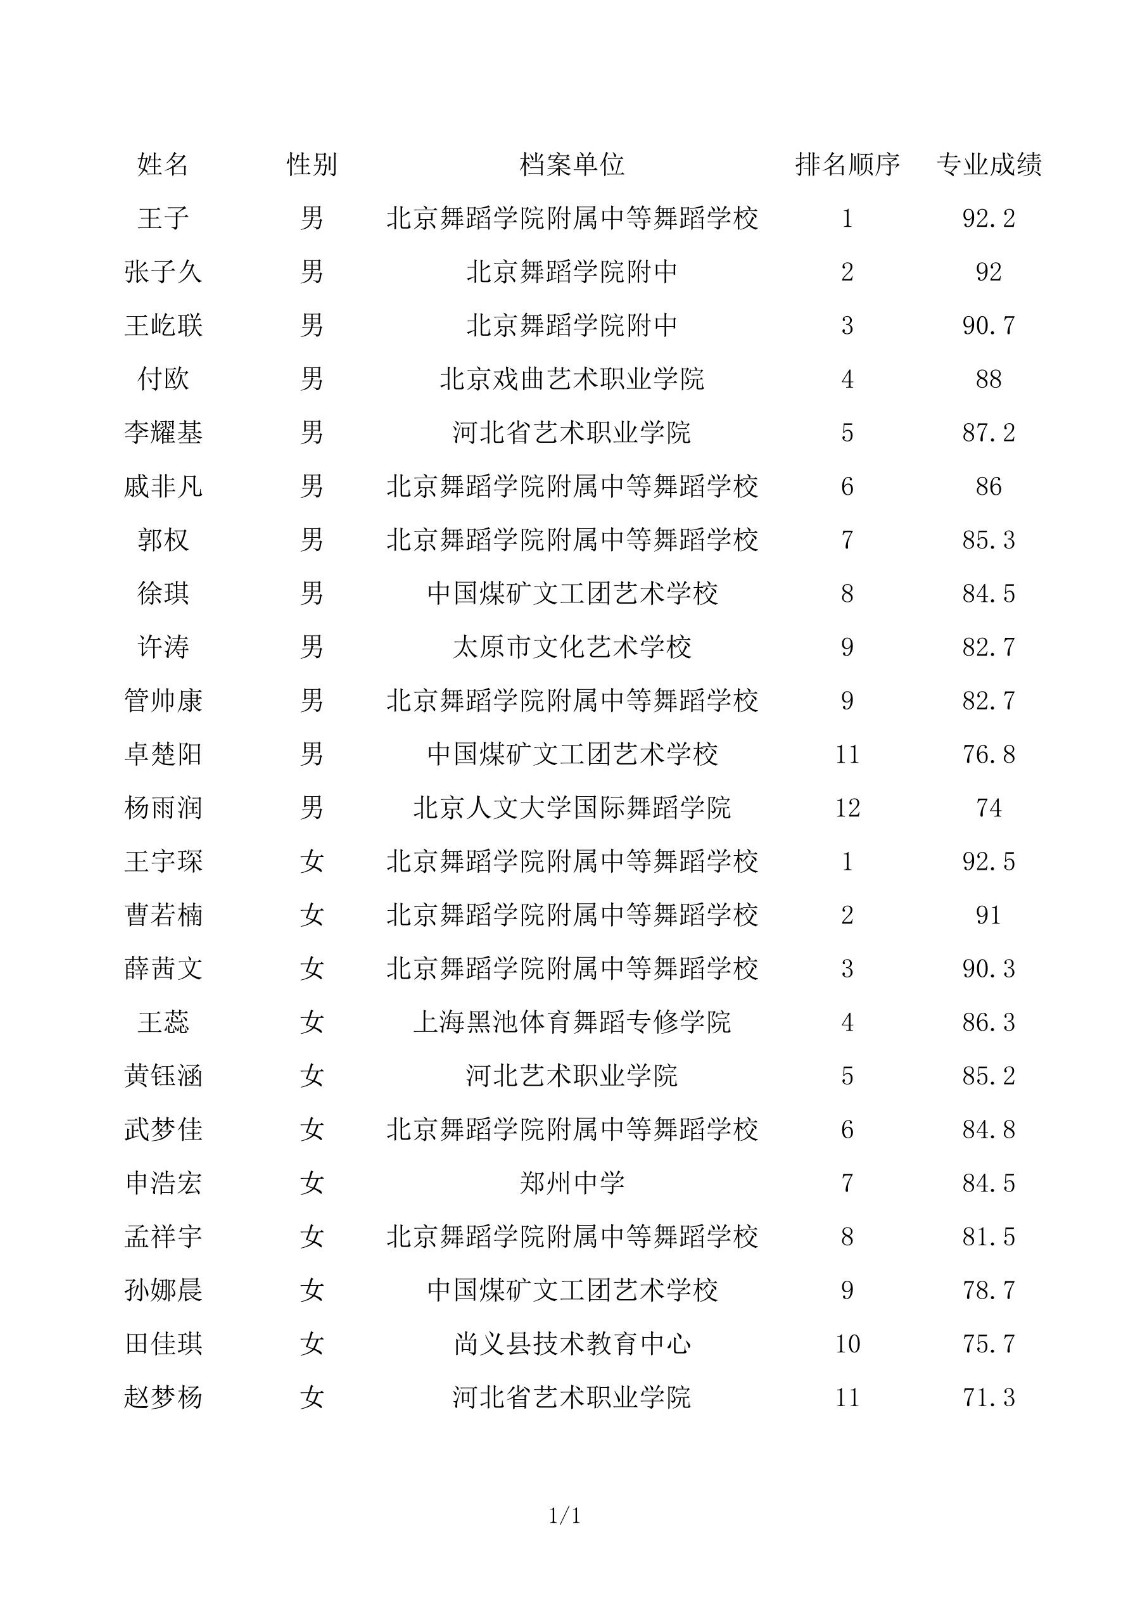 北京舞蹈学院2019年本科专业校考合格名单公示(国标—摩登)